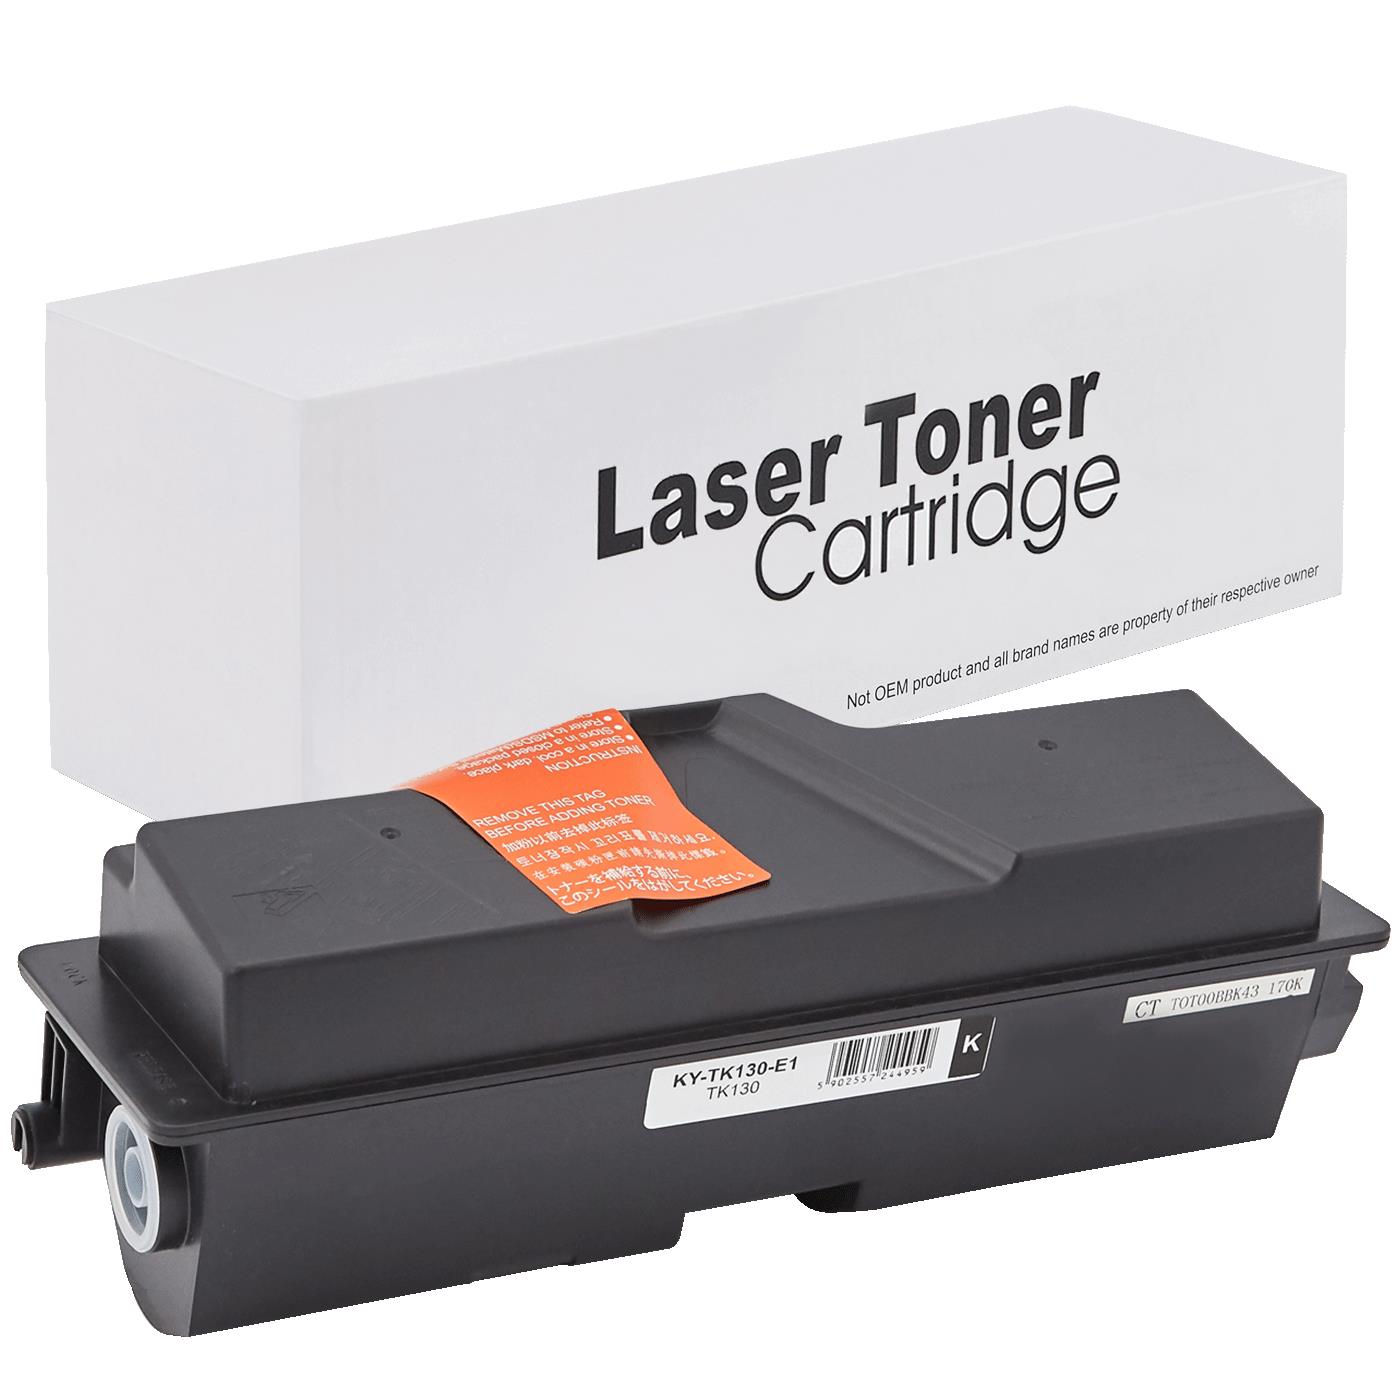 съвместима тонер касета за принтери и печатащи устройства на Kyocera Mita FS 1350N Toner KY-TK130 | TK130. Ниски цени, прецизно изпълнение, високо качество.